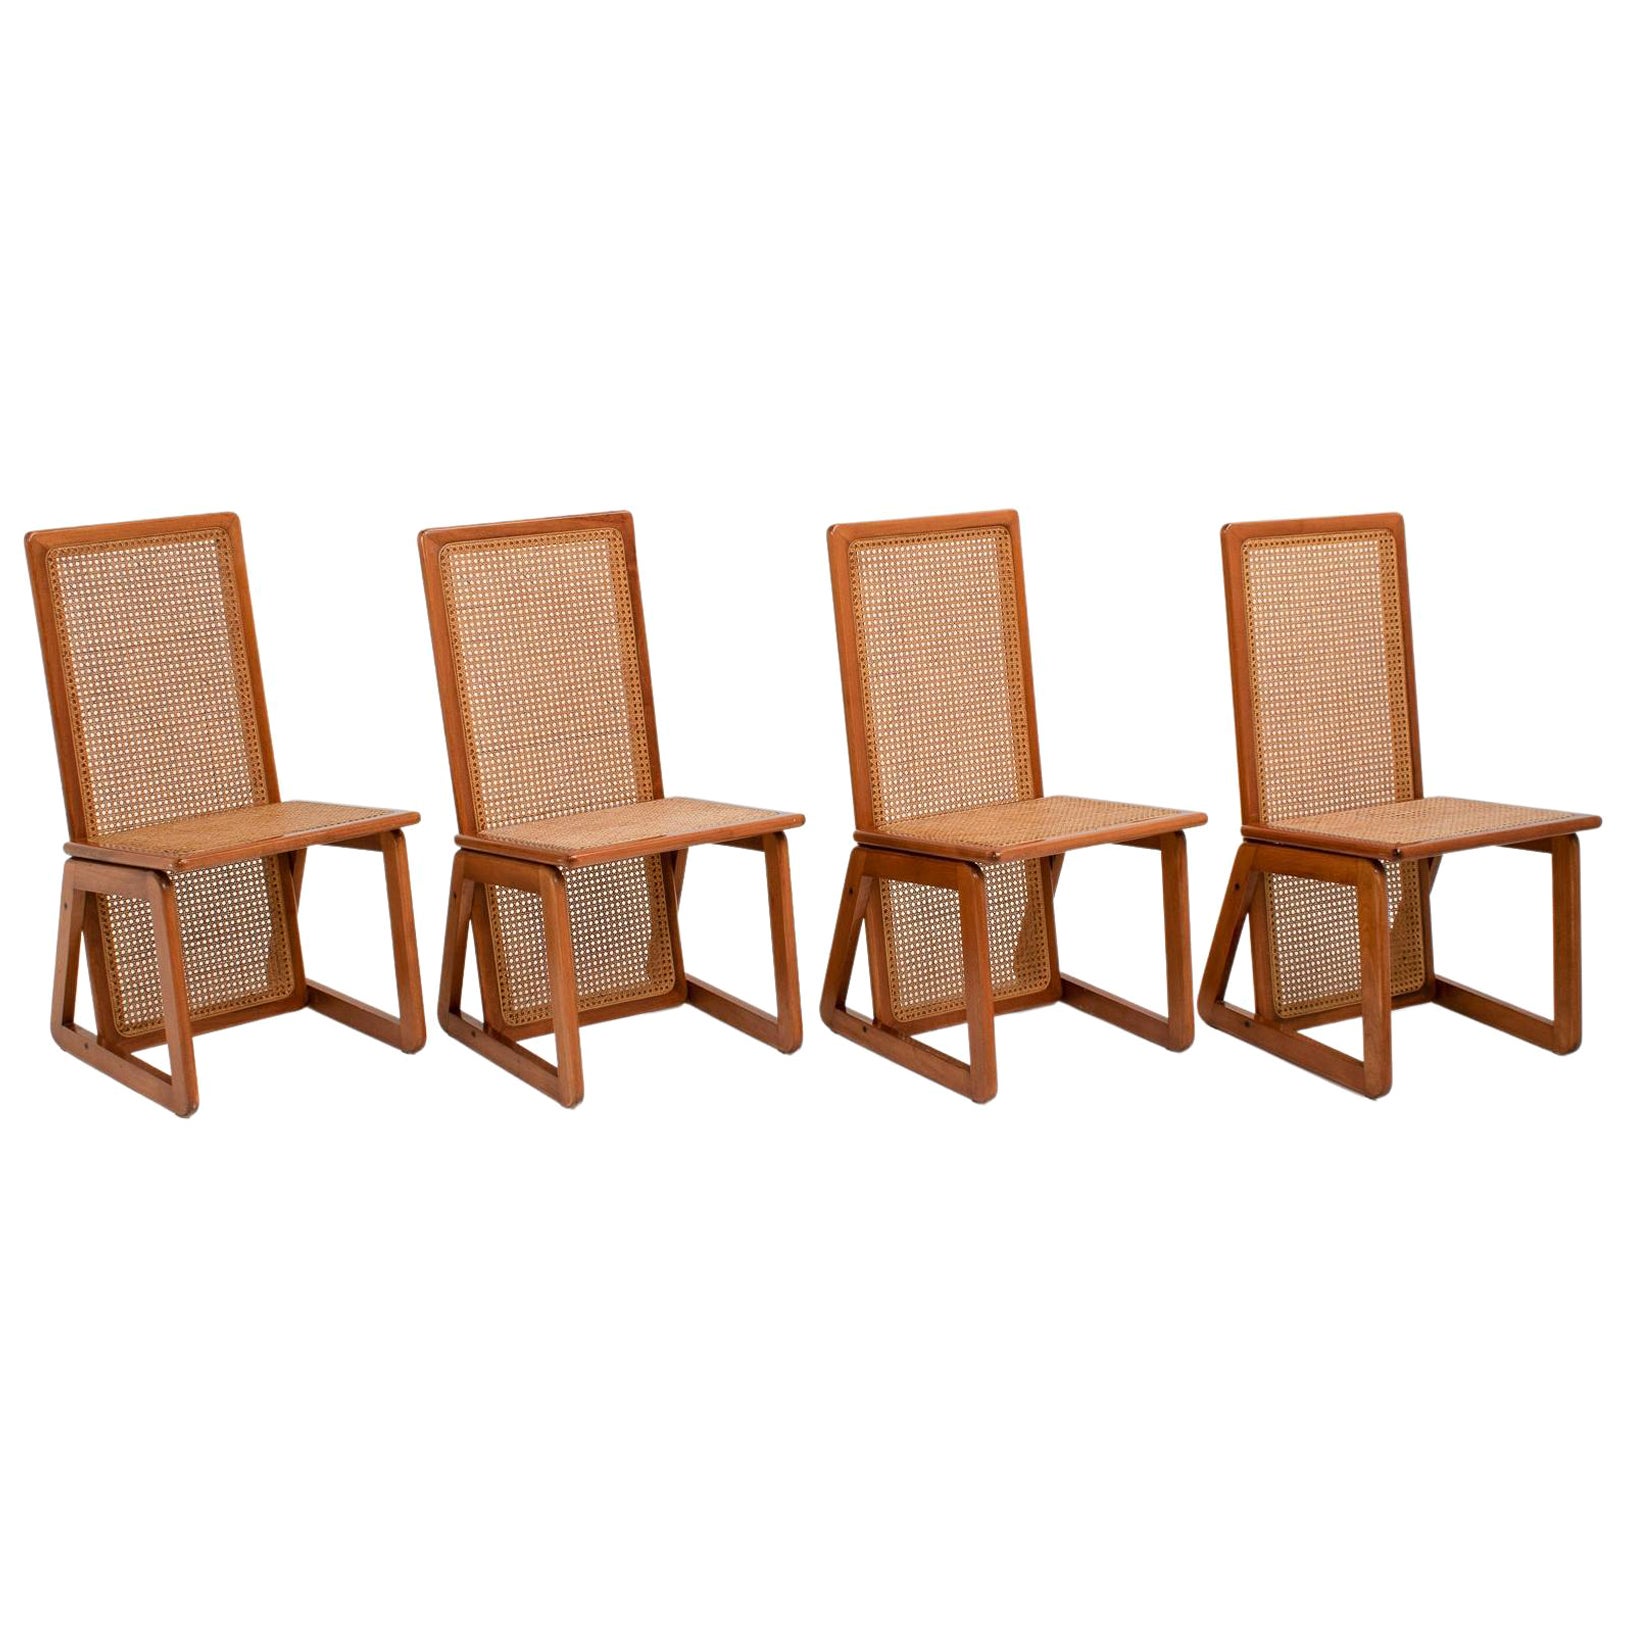 Satz von 4 italienischen Esszimmerstühlen mit hoher Rückenlehne aus Holz und Schilfrohr, 1970er Jahre